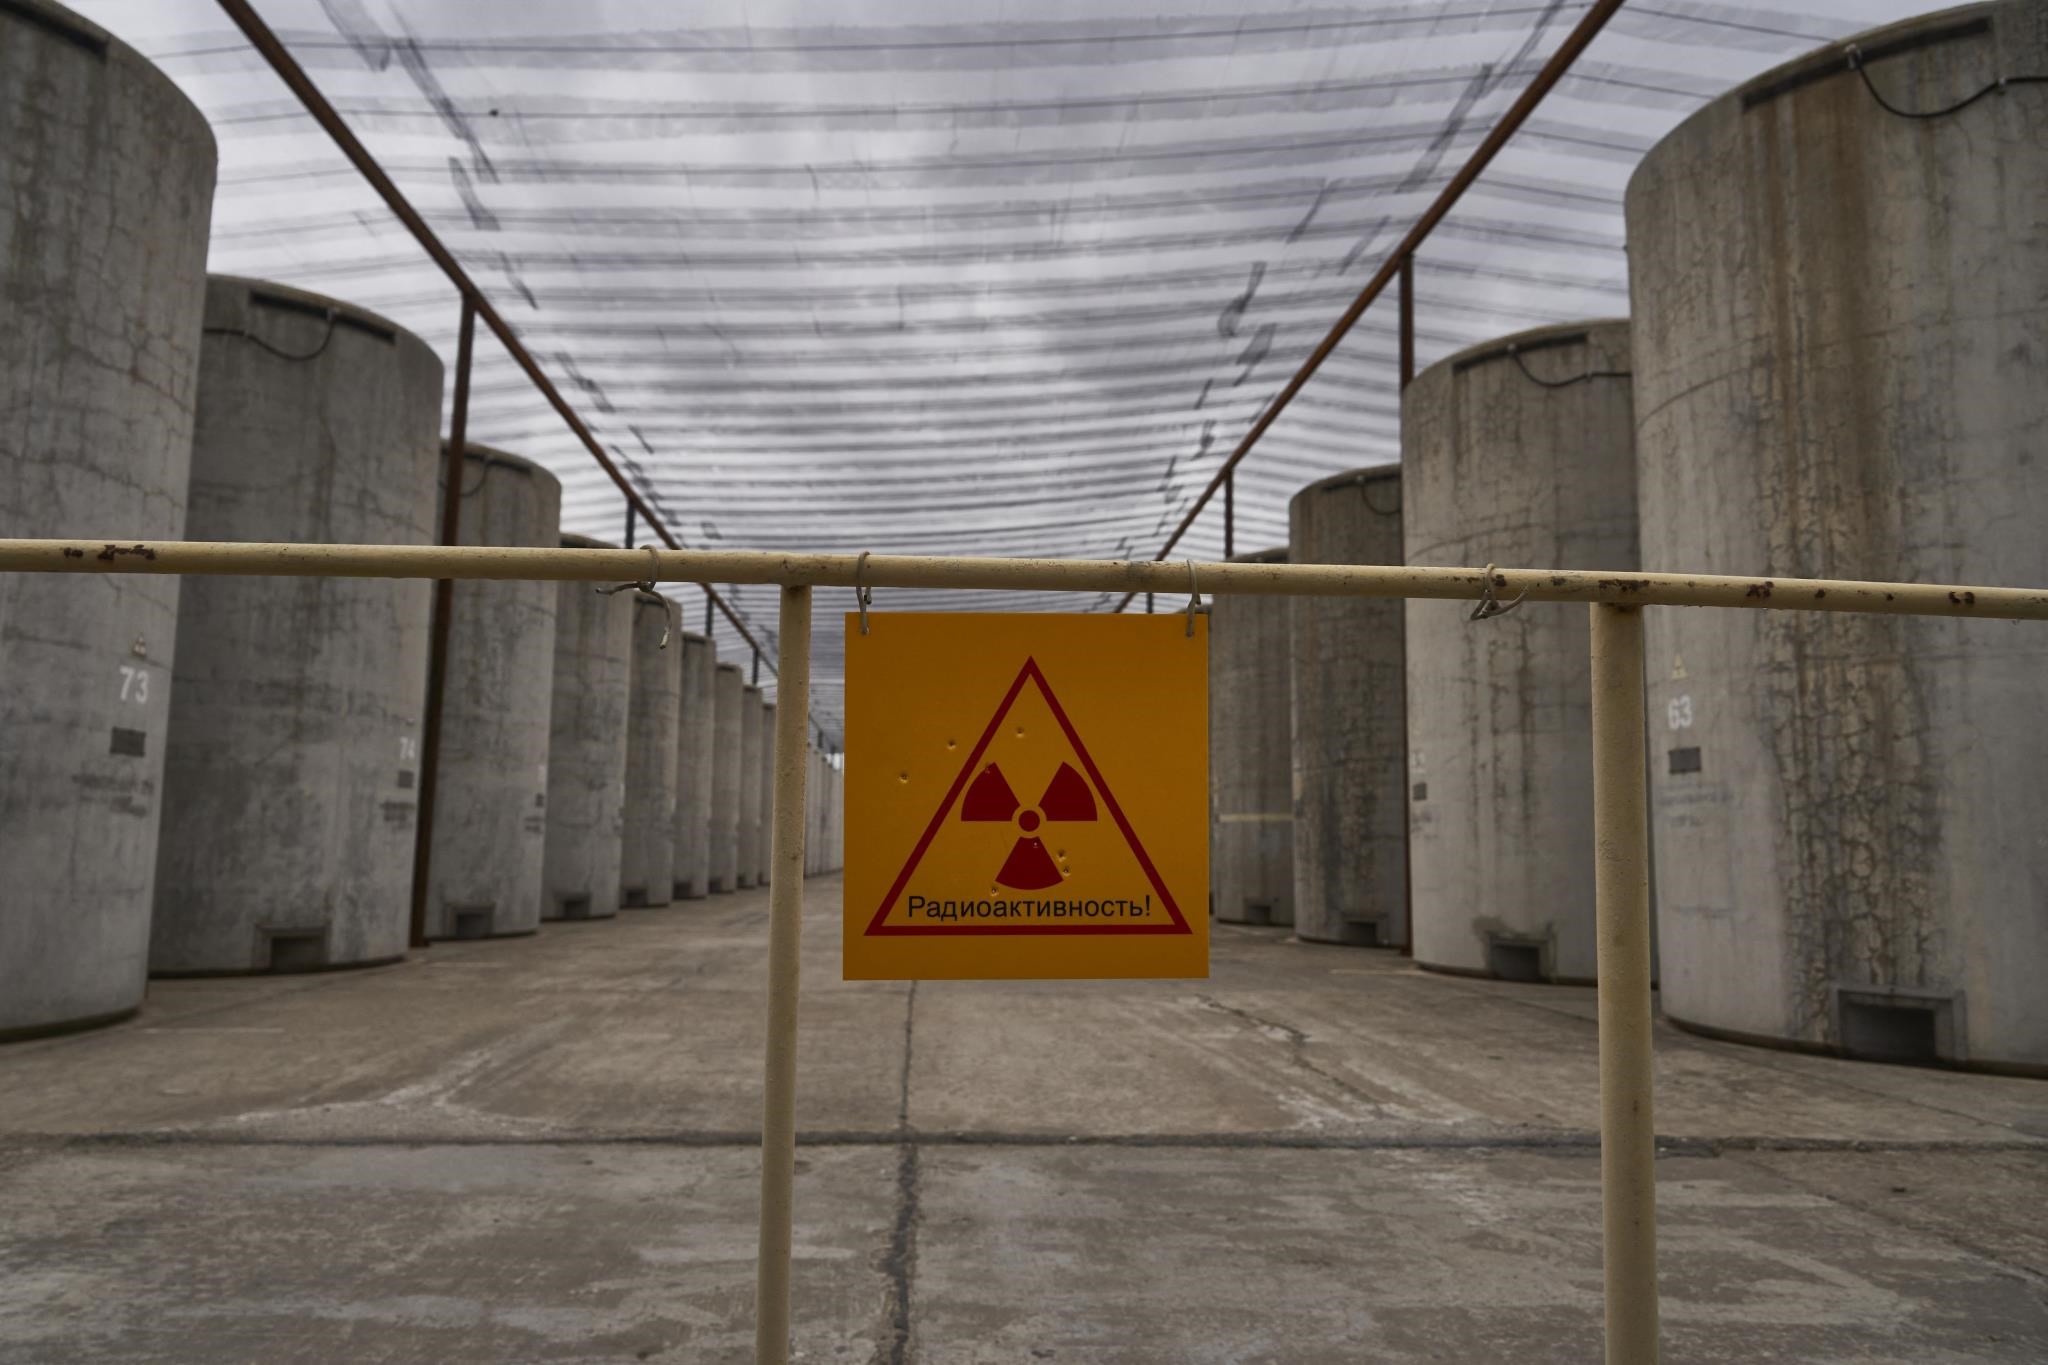 Científico: los residentes están siendo evacuados de las inmediaciones de la central nuclear de Zaporizhzhya y la Agencia de Energía Atómica está preocupada